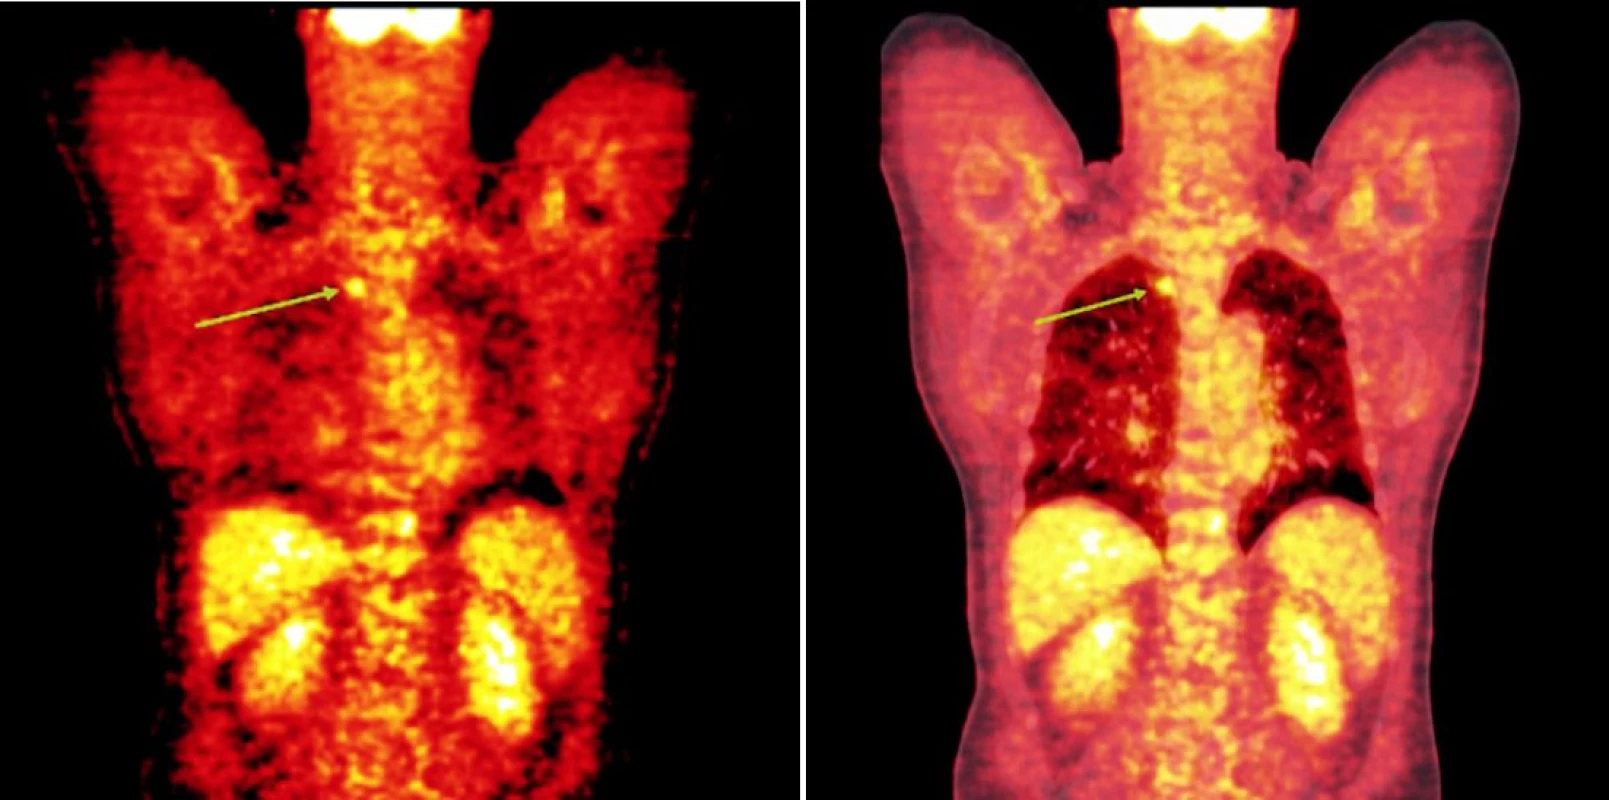 Srovnání snímků pozitronové emisní tomografie (s použitím 18F-fluoro-deoxy-glukózy) (a) a integrované pozitronové emisní tomografie s počítačovou tomografií (b) po skončení léčby 90Y-ibritumomab tiuxetanem u třetího pacienta s folikulárním lymfomem a nálezem ložiska v plicním parenchymu.